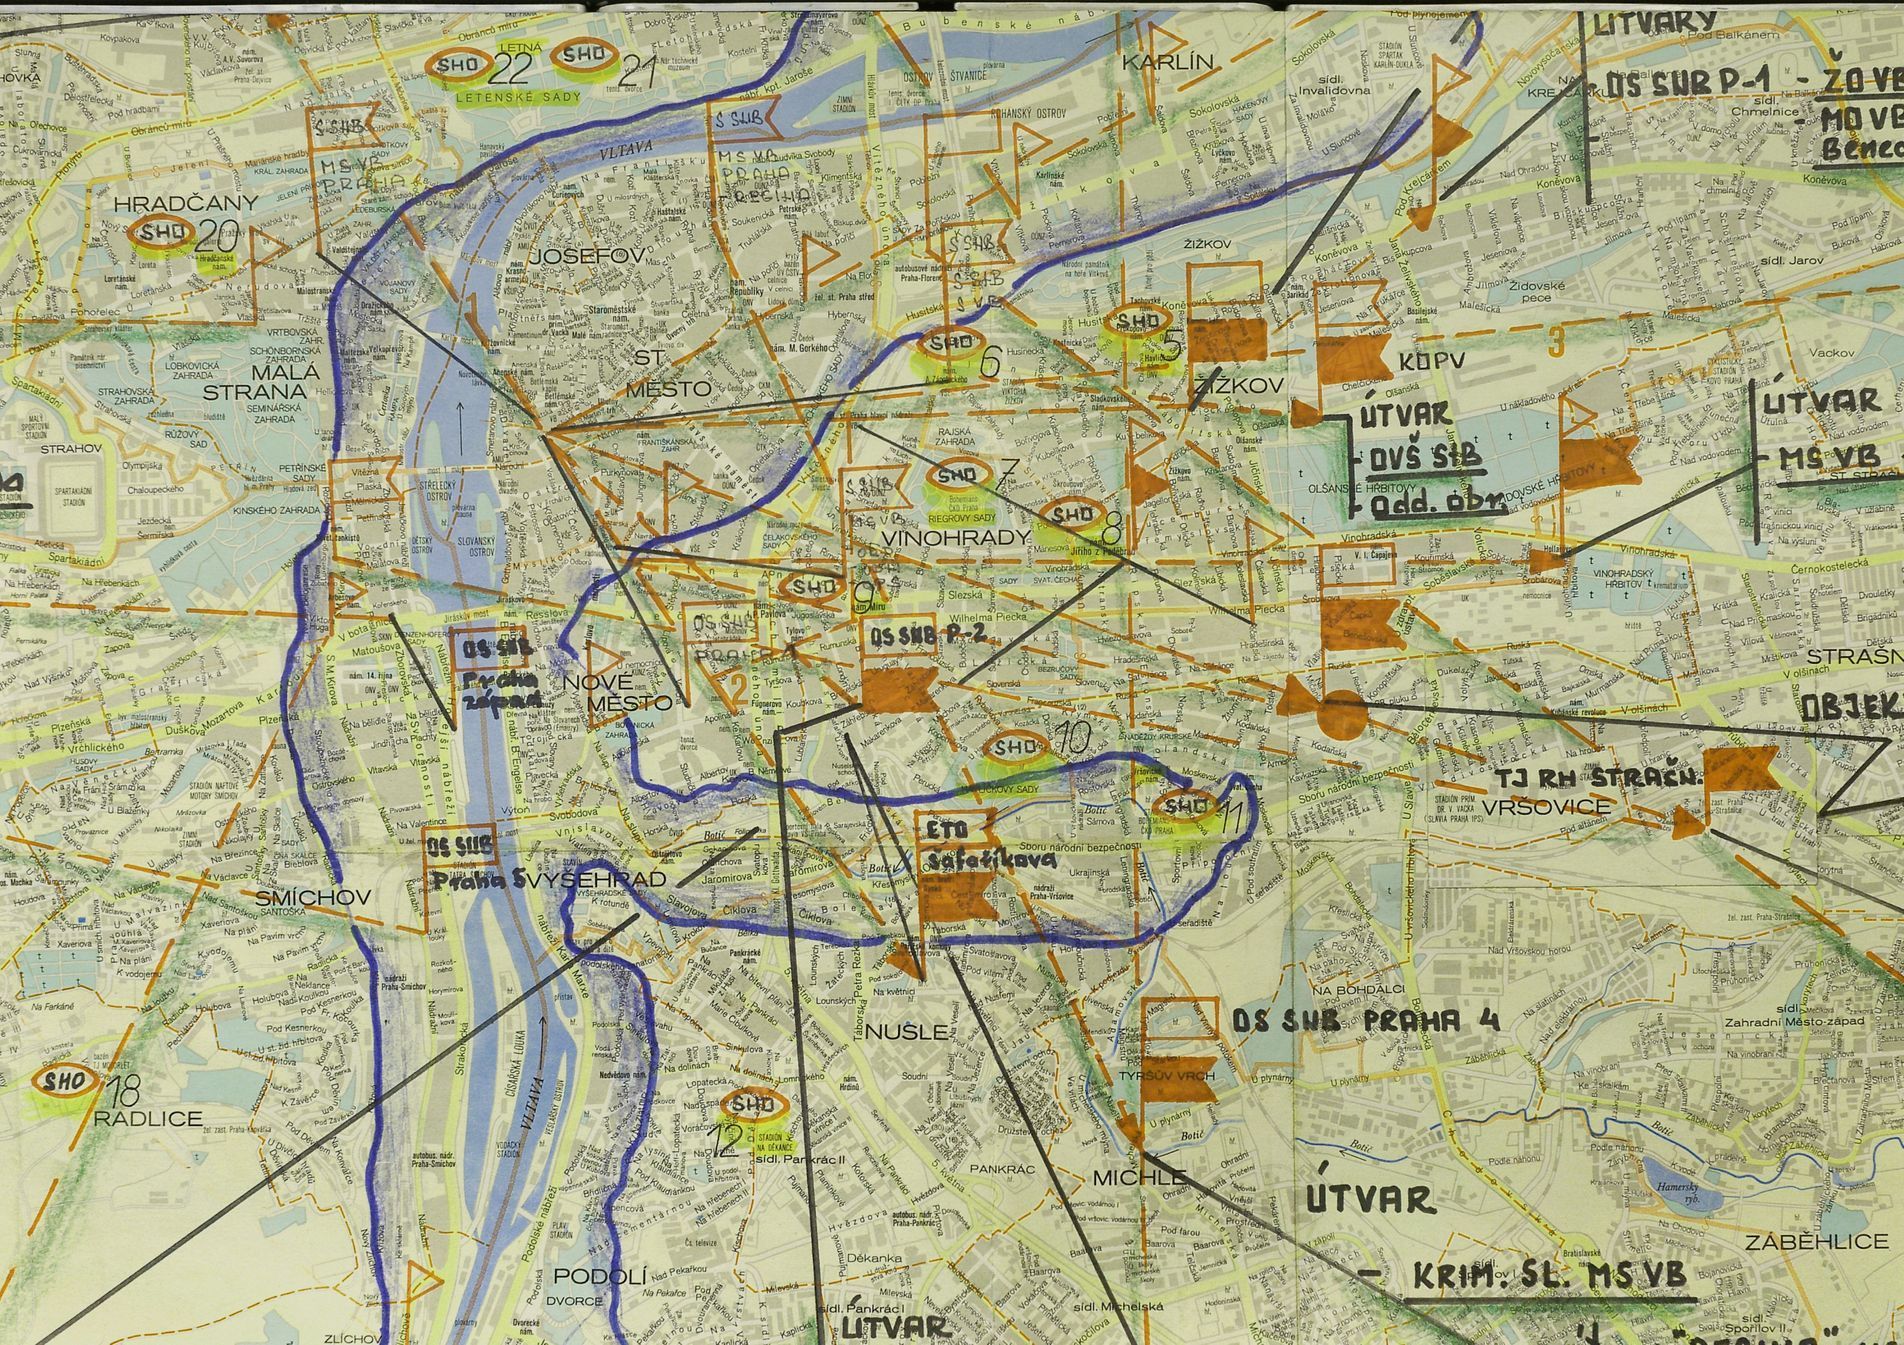 Plán Průlomová vlna z roku 1982: detail centra Prahy